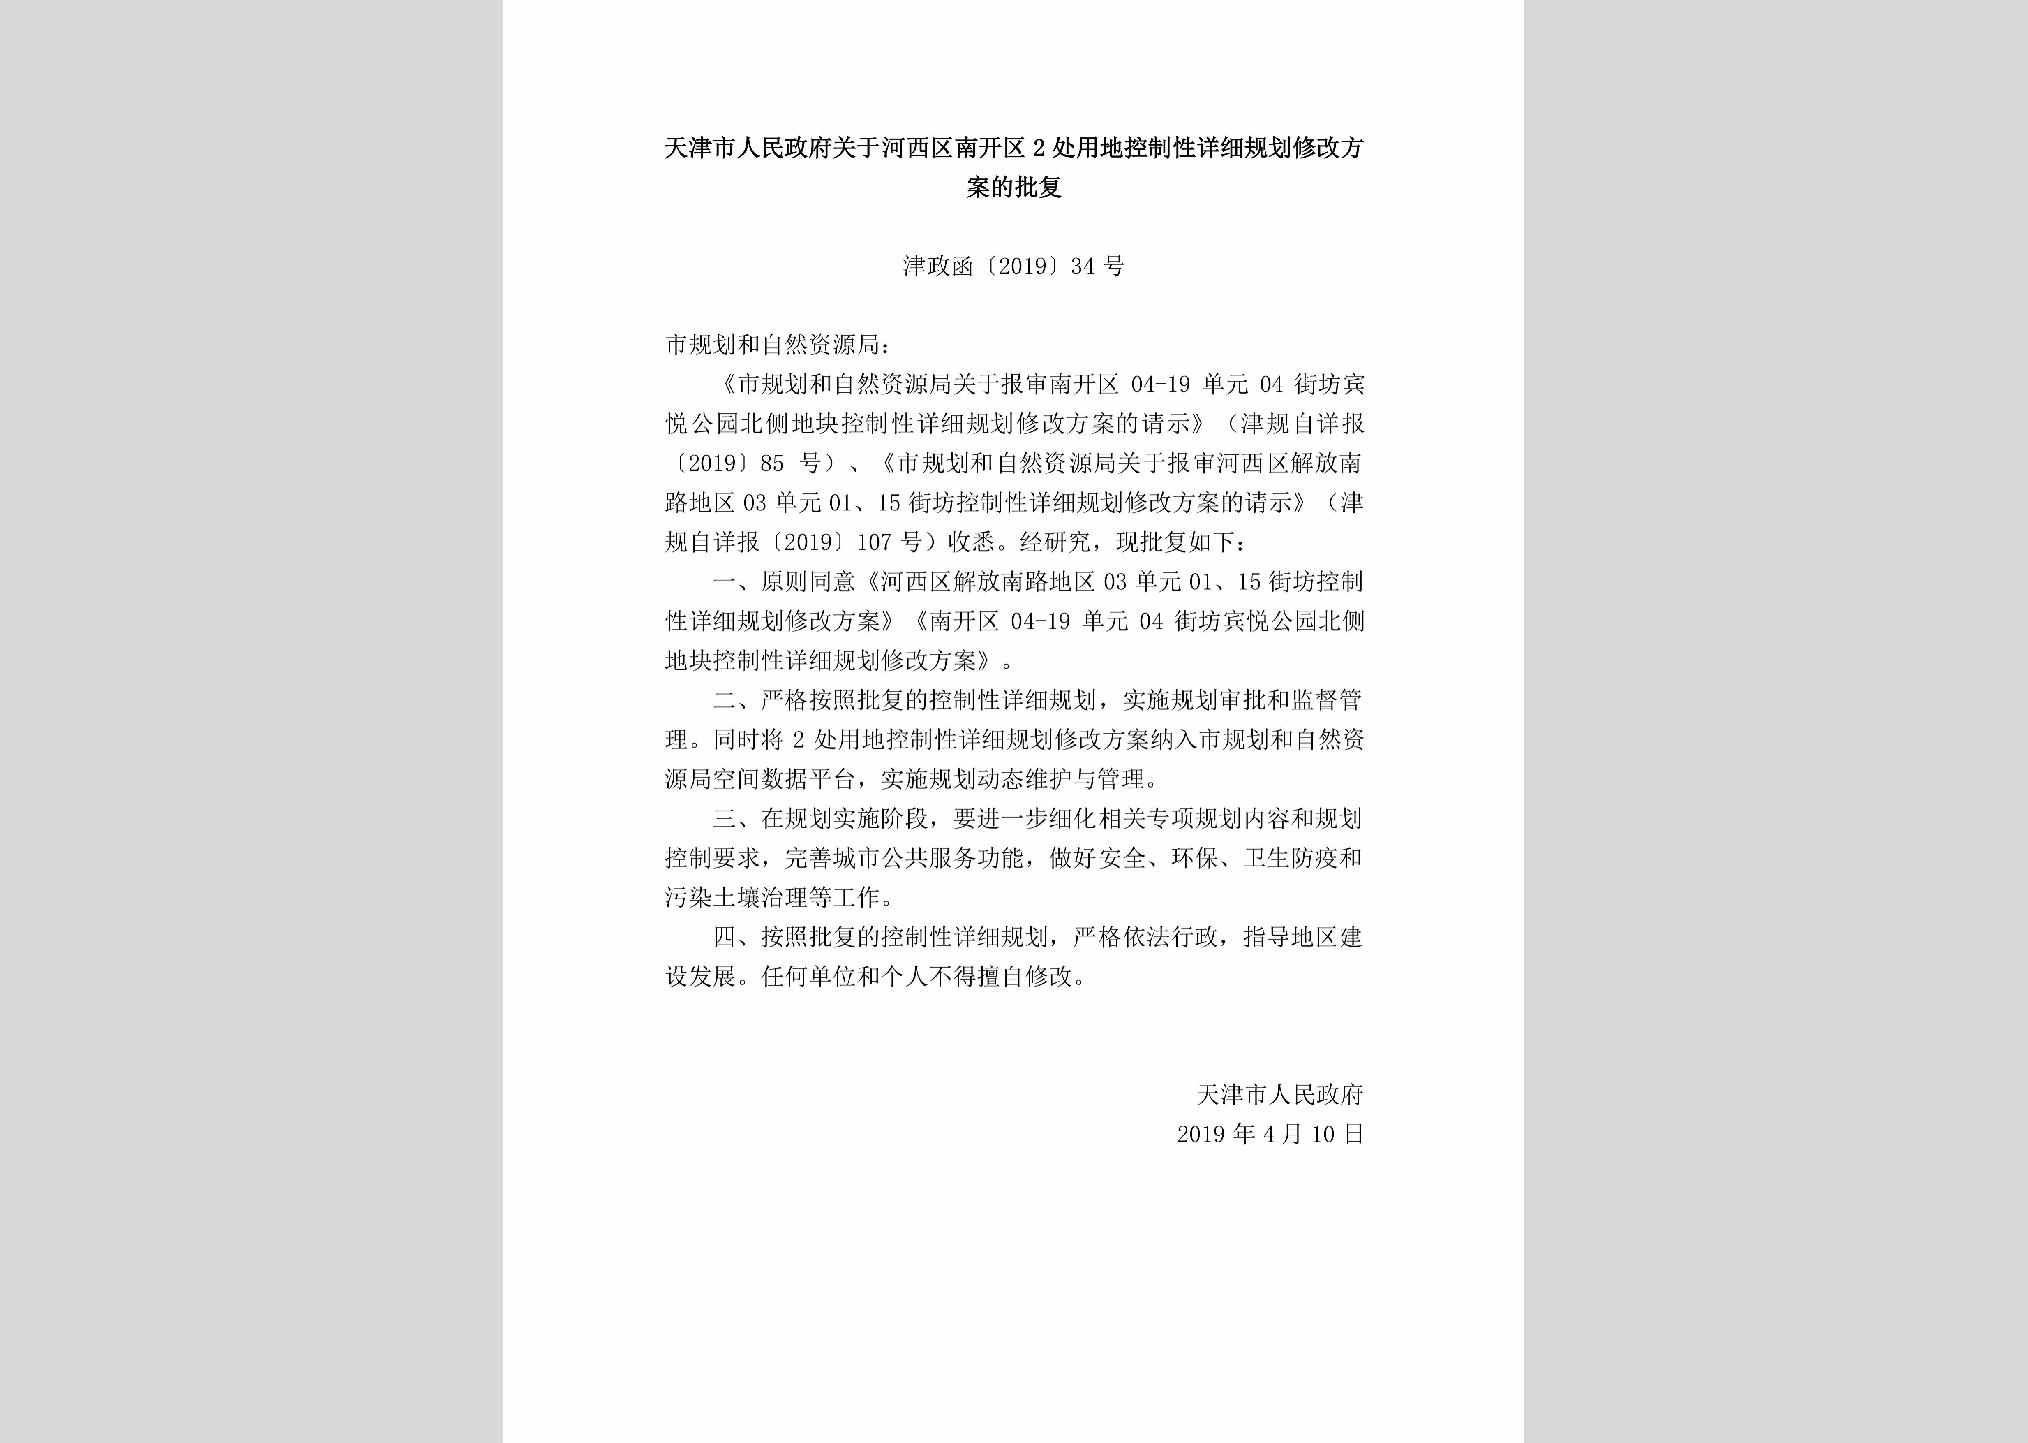 津政函[2019]34号：天津市人民政府关于河西区南开区2处用地控制性详细规划修改方案的批复